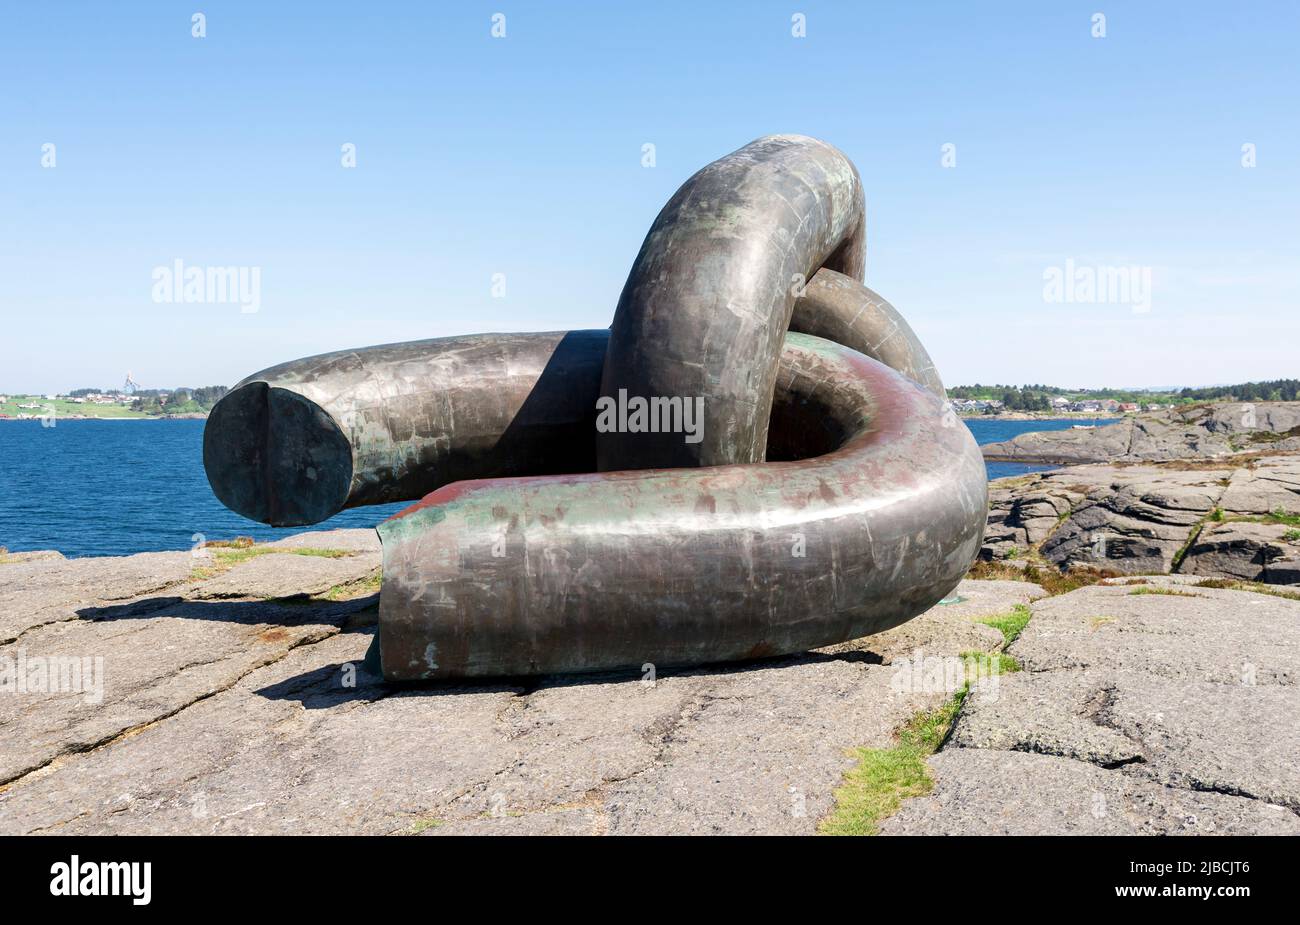 A broken chain link in Brutt Lenke monument in memory of offshore oil rig Alexander Kjelland disaster accident, Stavanger, Norway, May 2018 Stock Photo